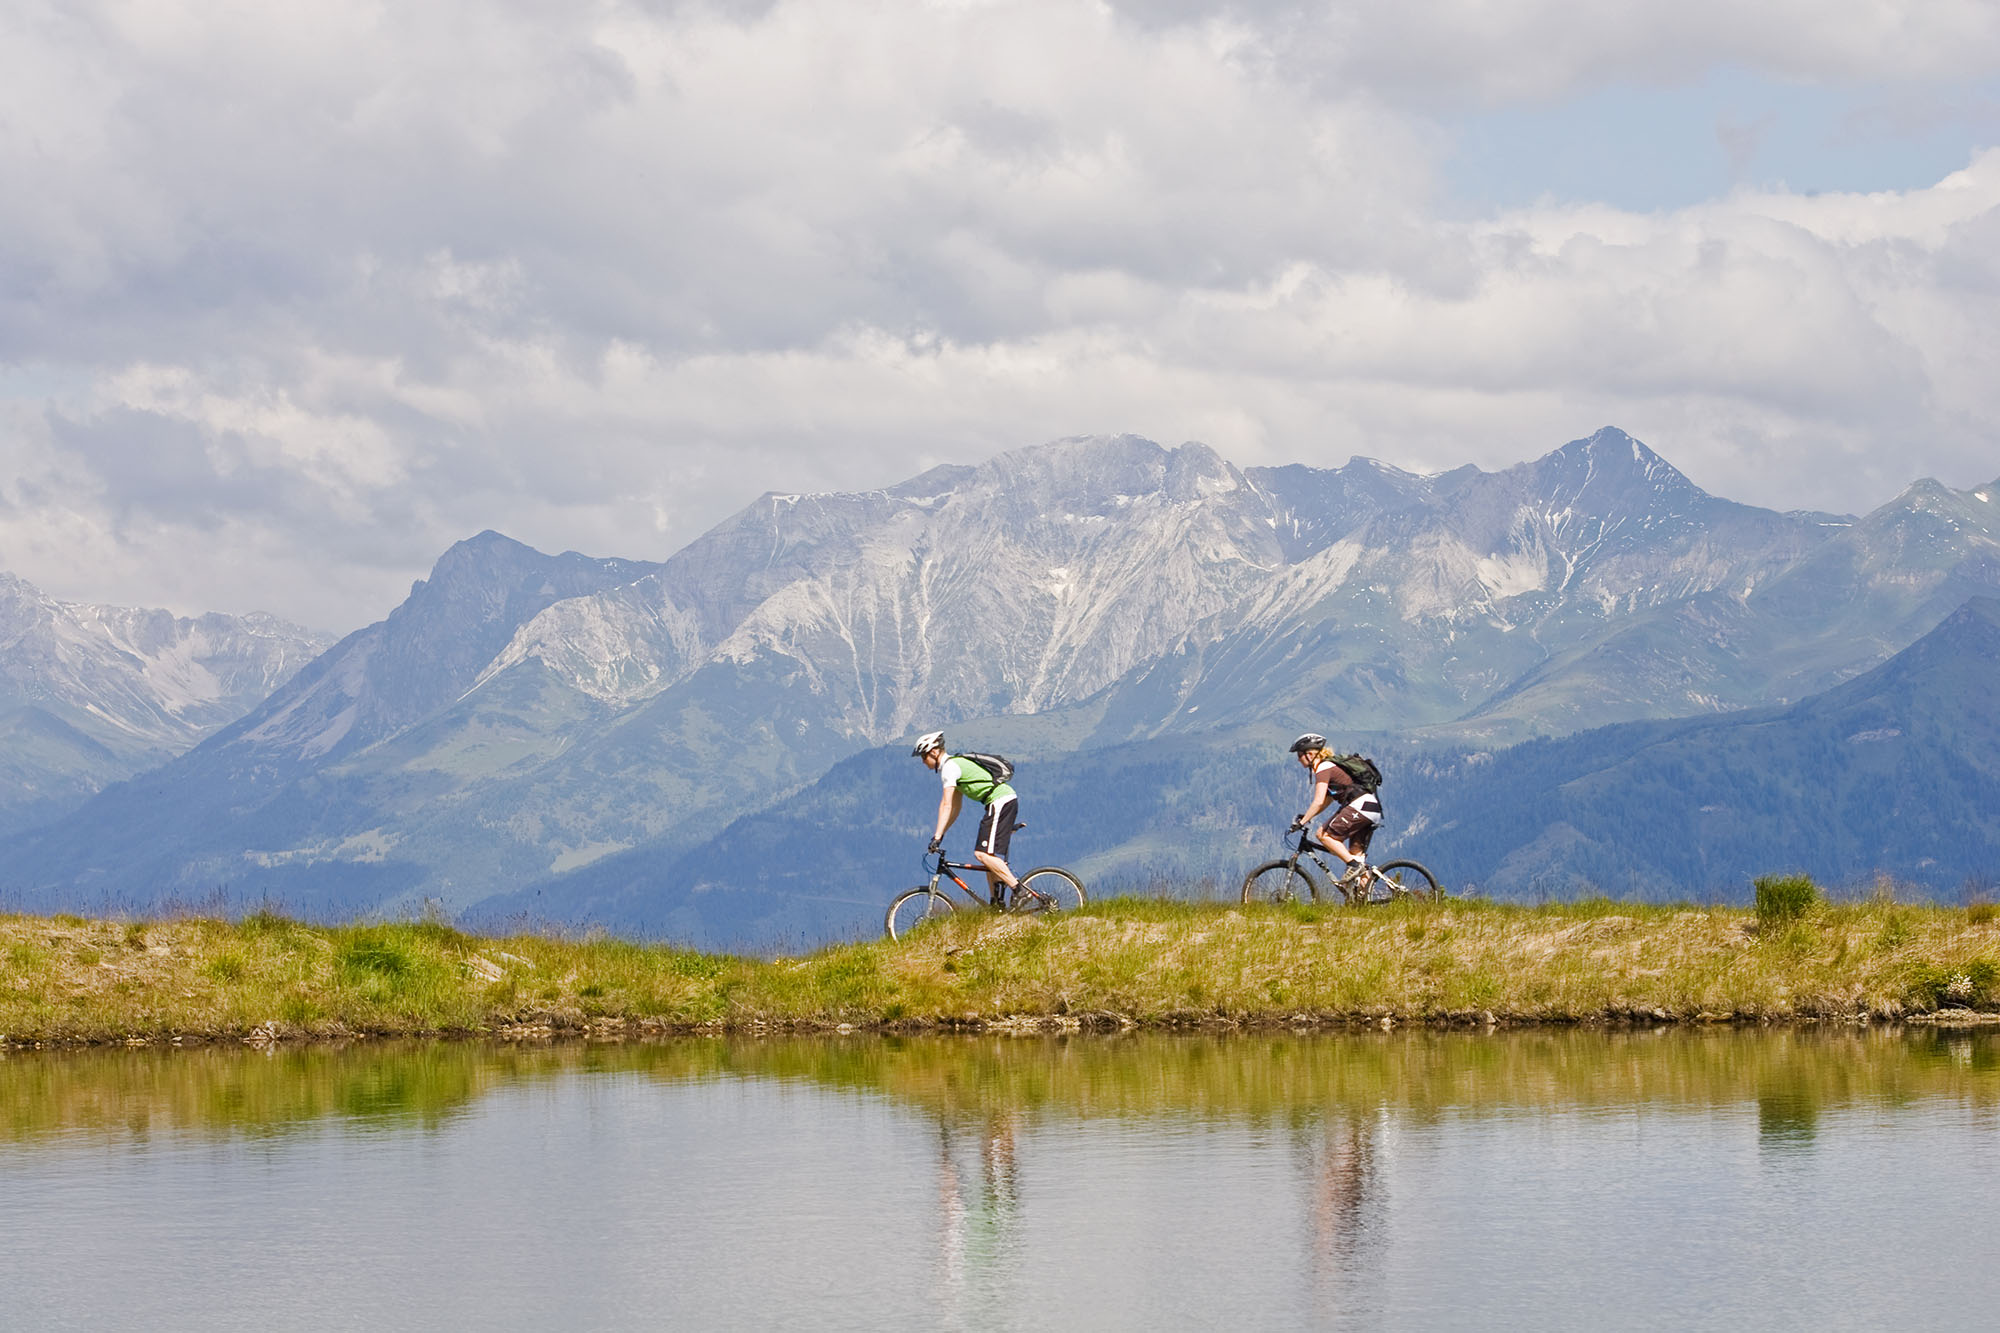 Mountainbiking in wonderful Mountain landscape